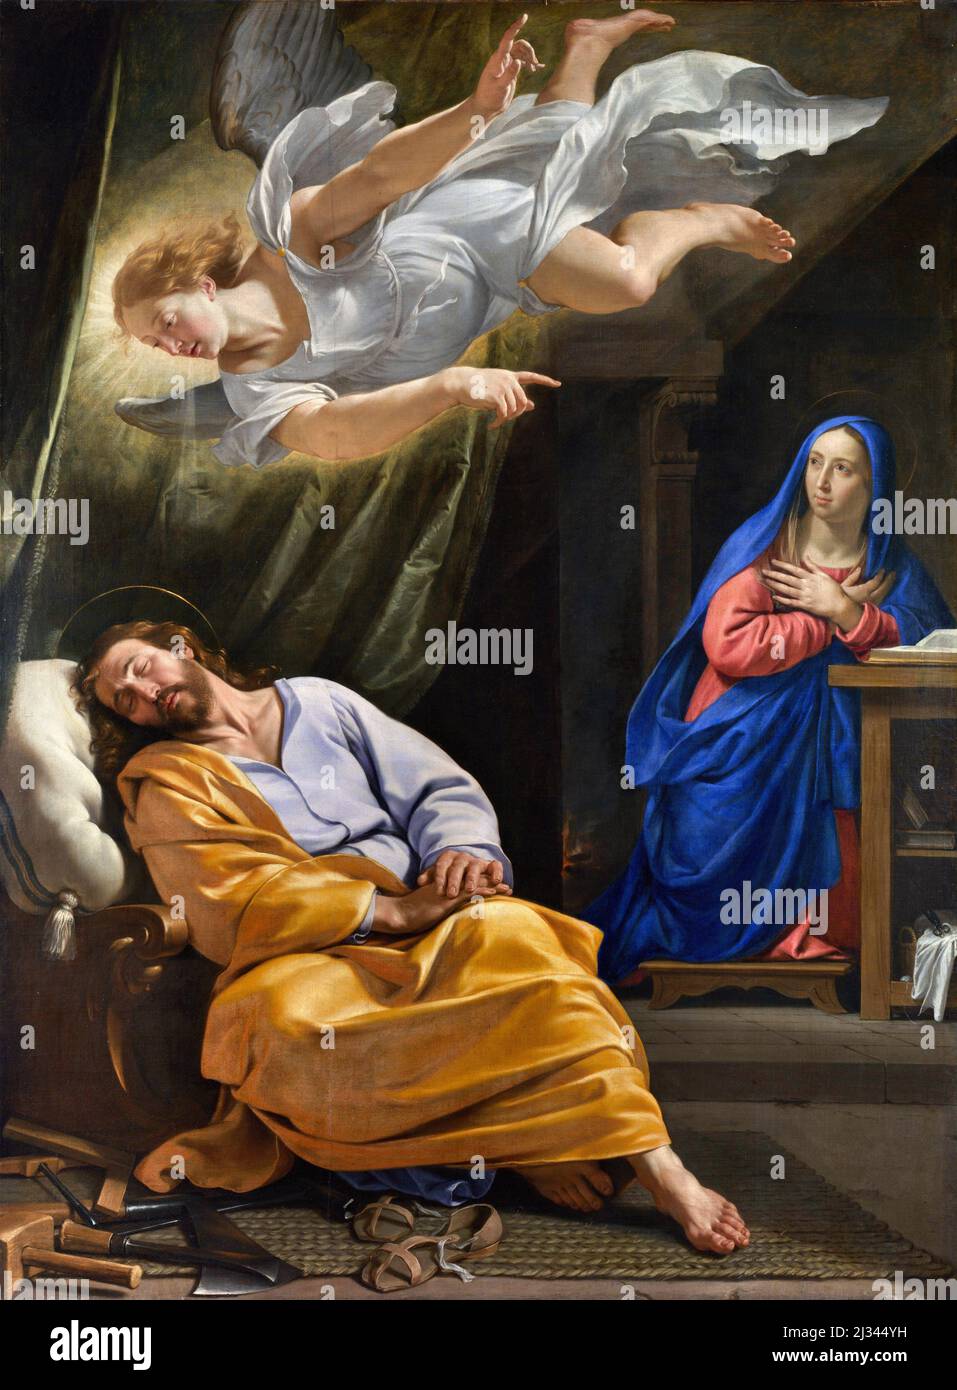 Le rêve de Saint Joseph par Philippe de Champaigne (1602-1674), huile sur toile, 1642/43 Banque D'Images